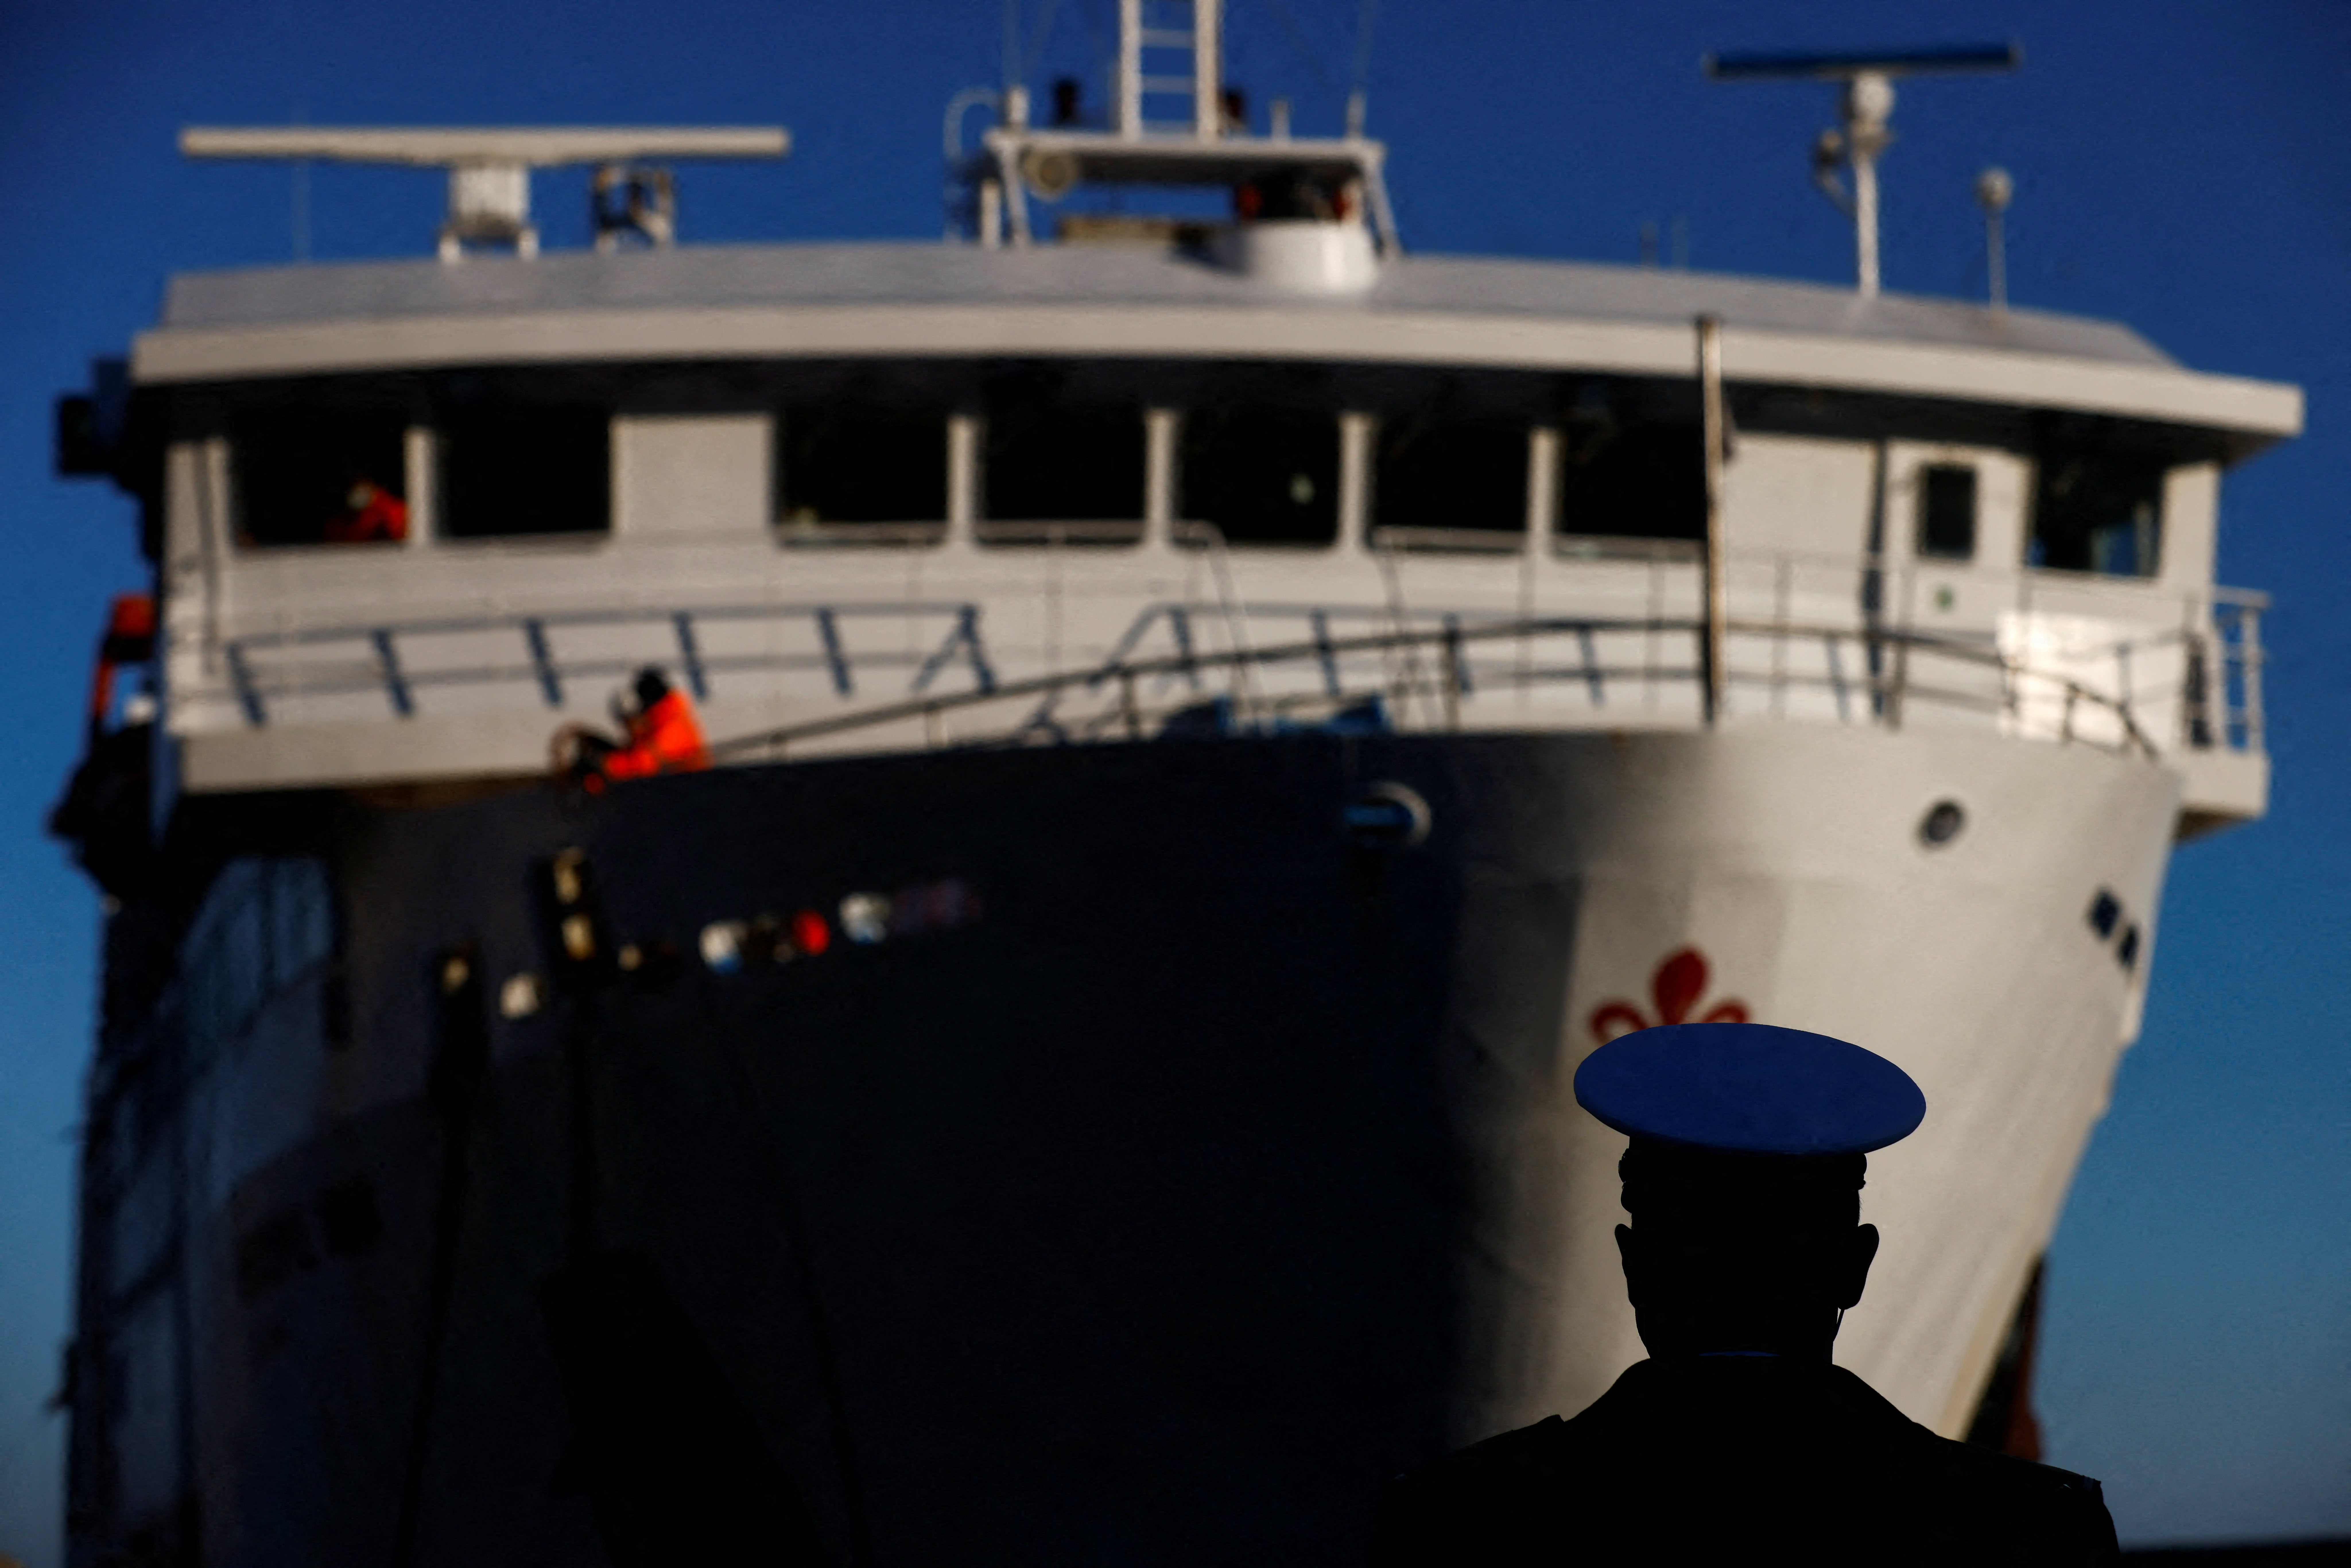 En medlem av hamnmyndigheterna ser på när en färja anländer en dag av tioårsdagen av Costa Concordias skeppsvrak som dödade 32 människor efter att den kapsejsade och sjönk utanför kusten, på ön Giglio, Italien, den 13 januari 2022. REUTERS/Yara Nardi